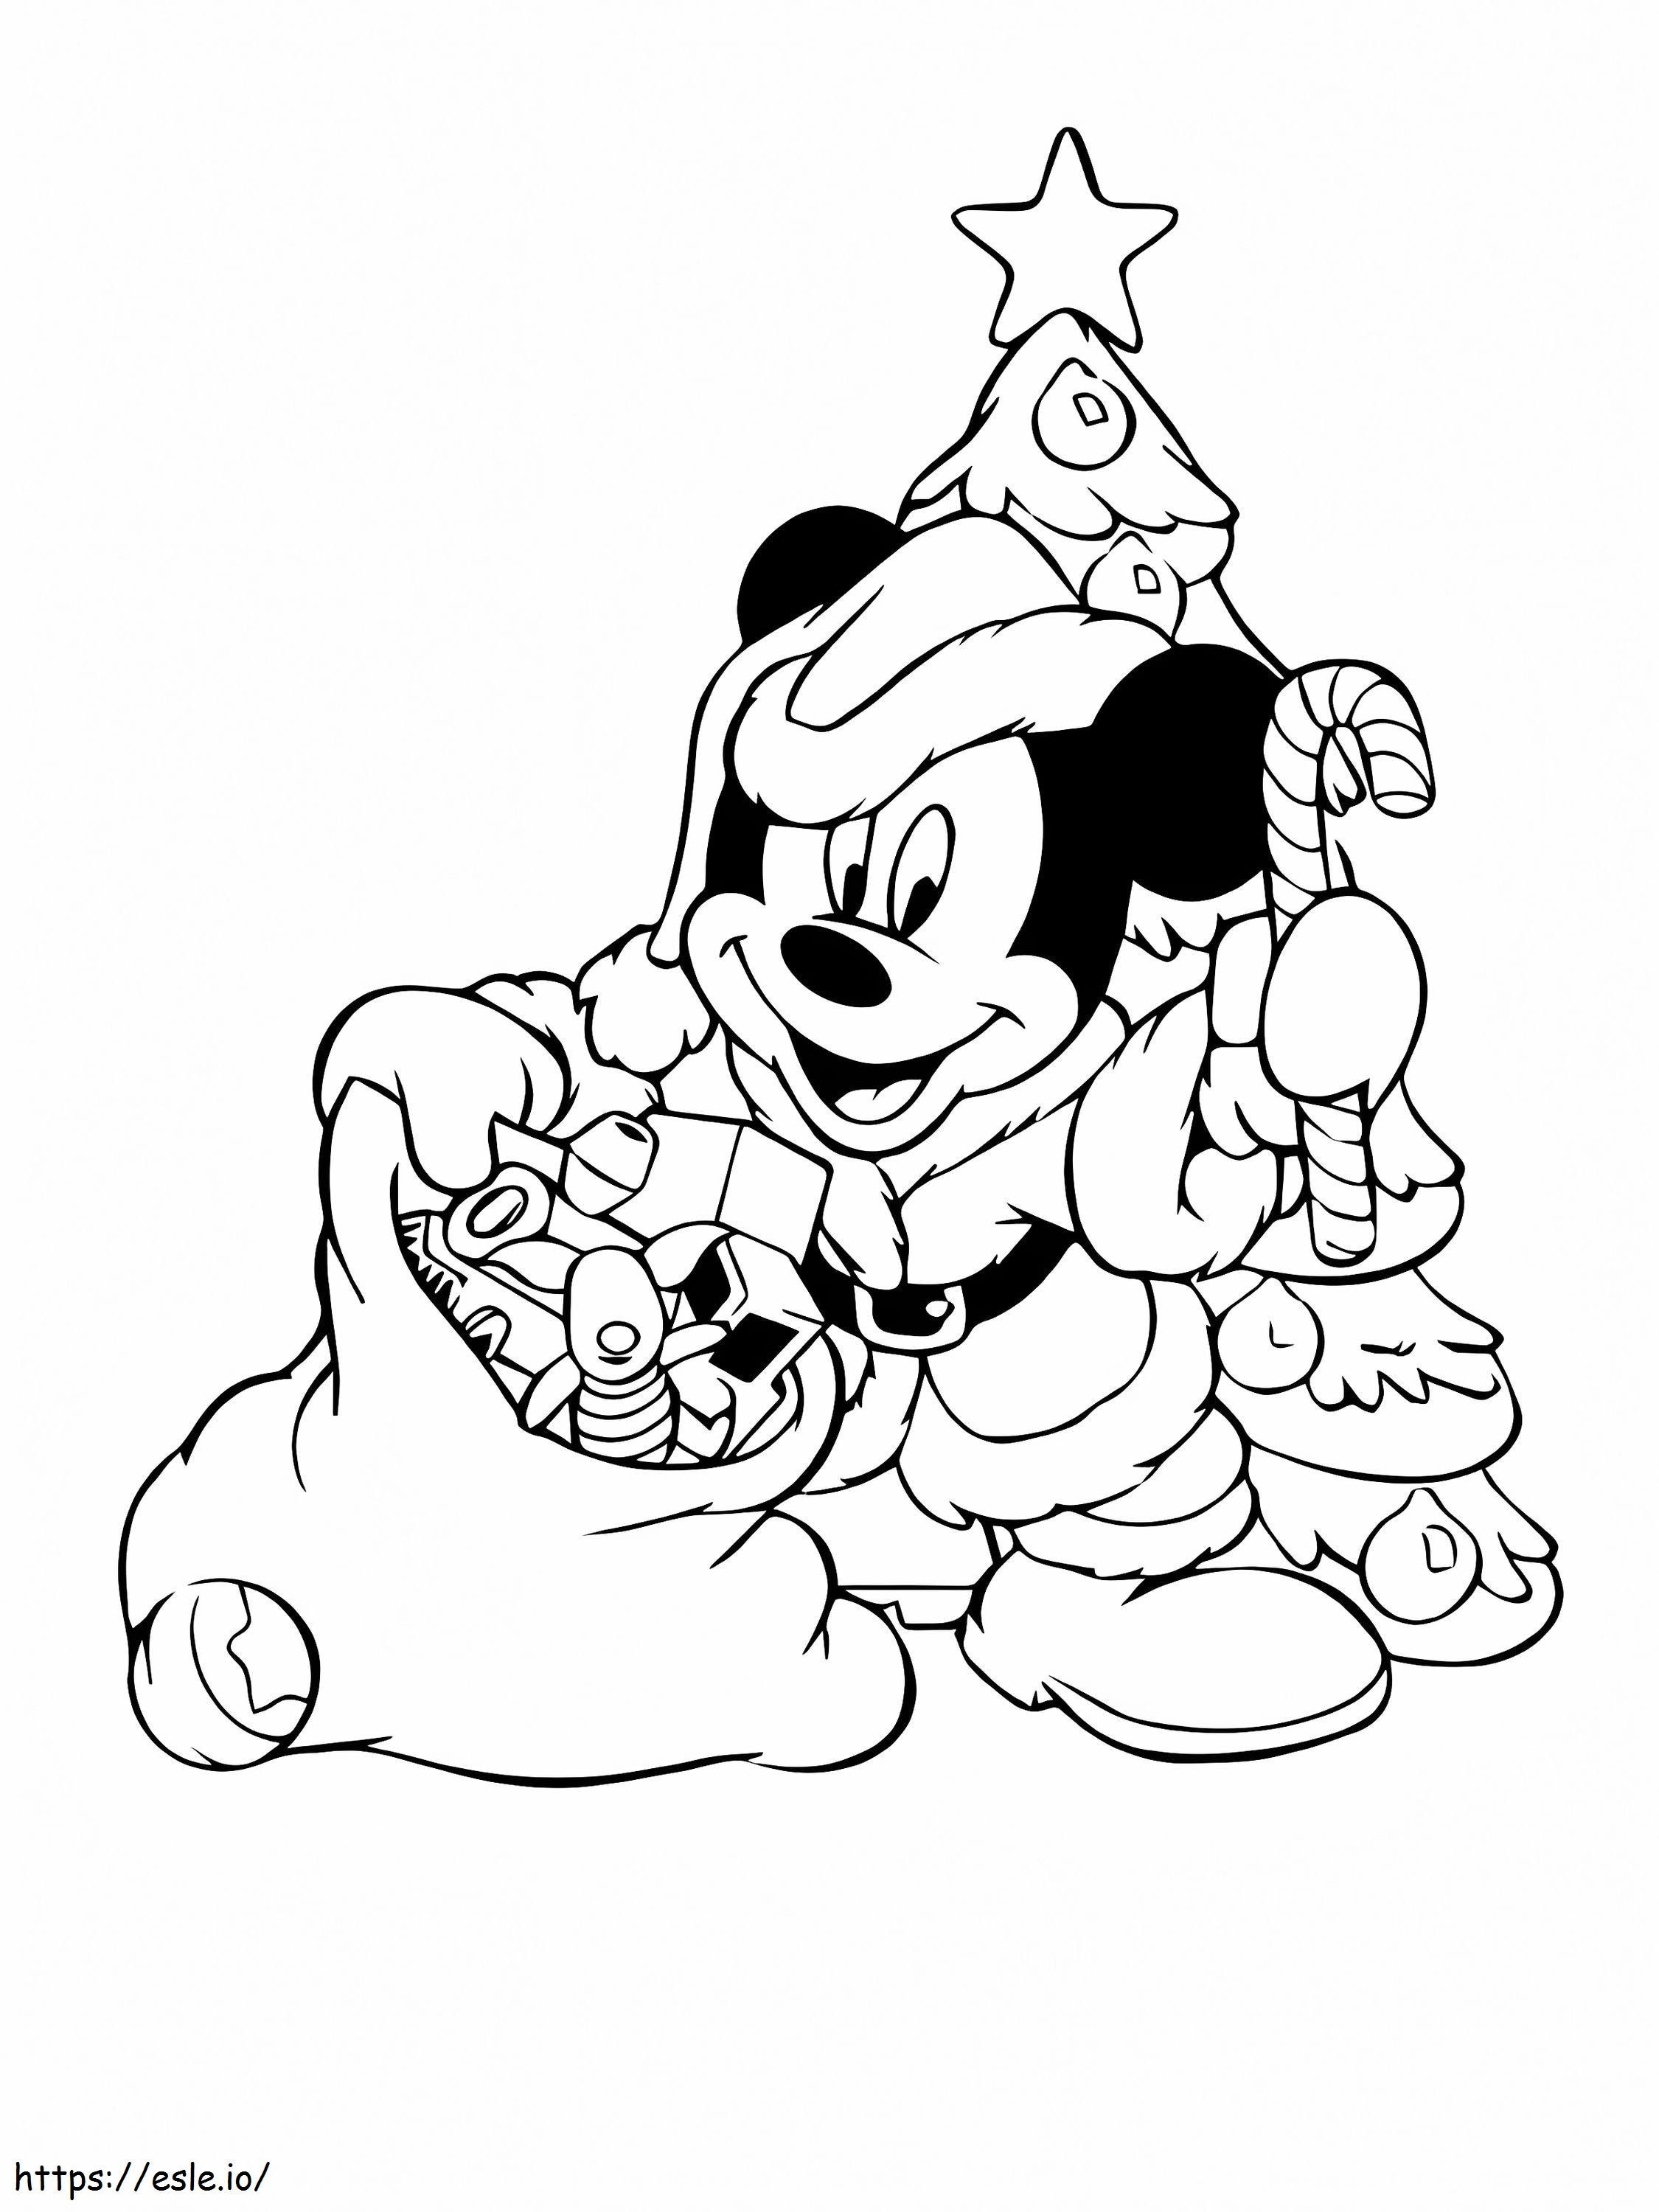 Ausmalbilder Mickey Mouse und Weihnachtsgeschenk ausmalbilder